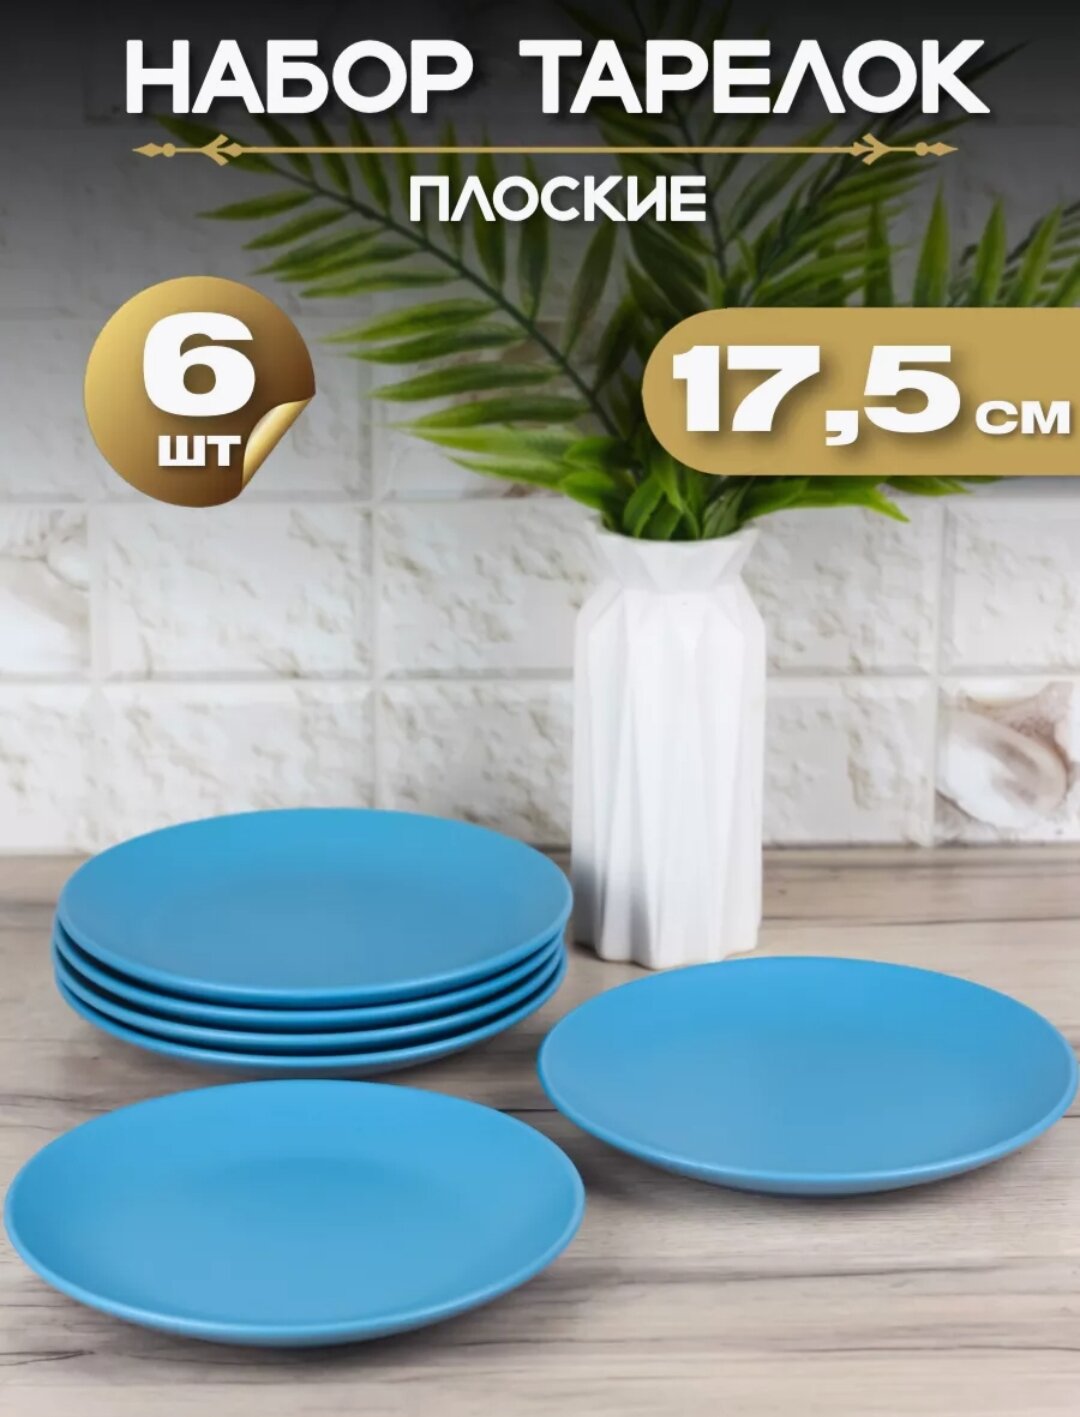 Тарелка плоская "Синий матовый" d17,5 см/ Набор тарелок 6 шт